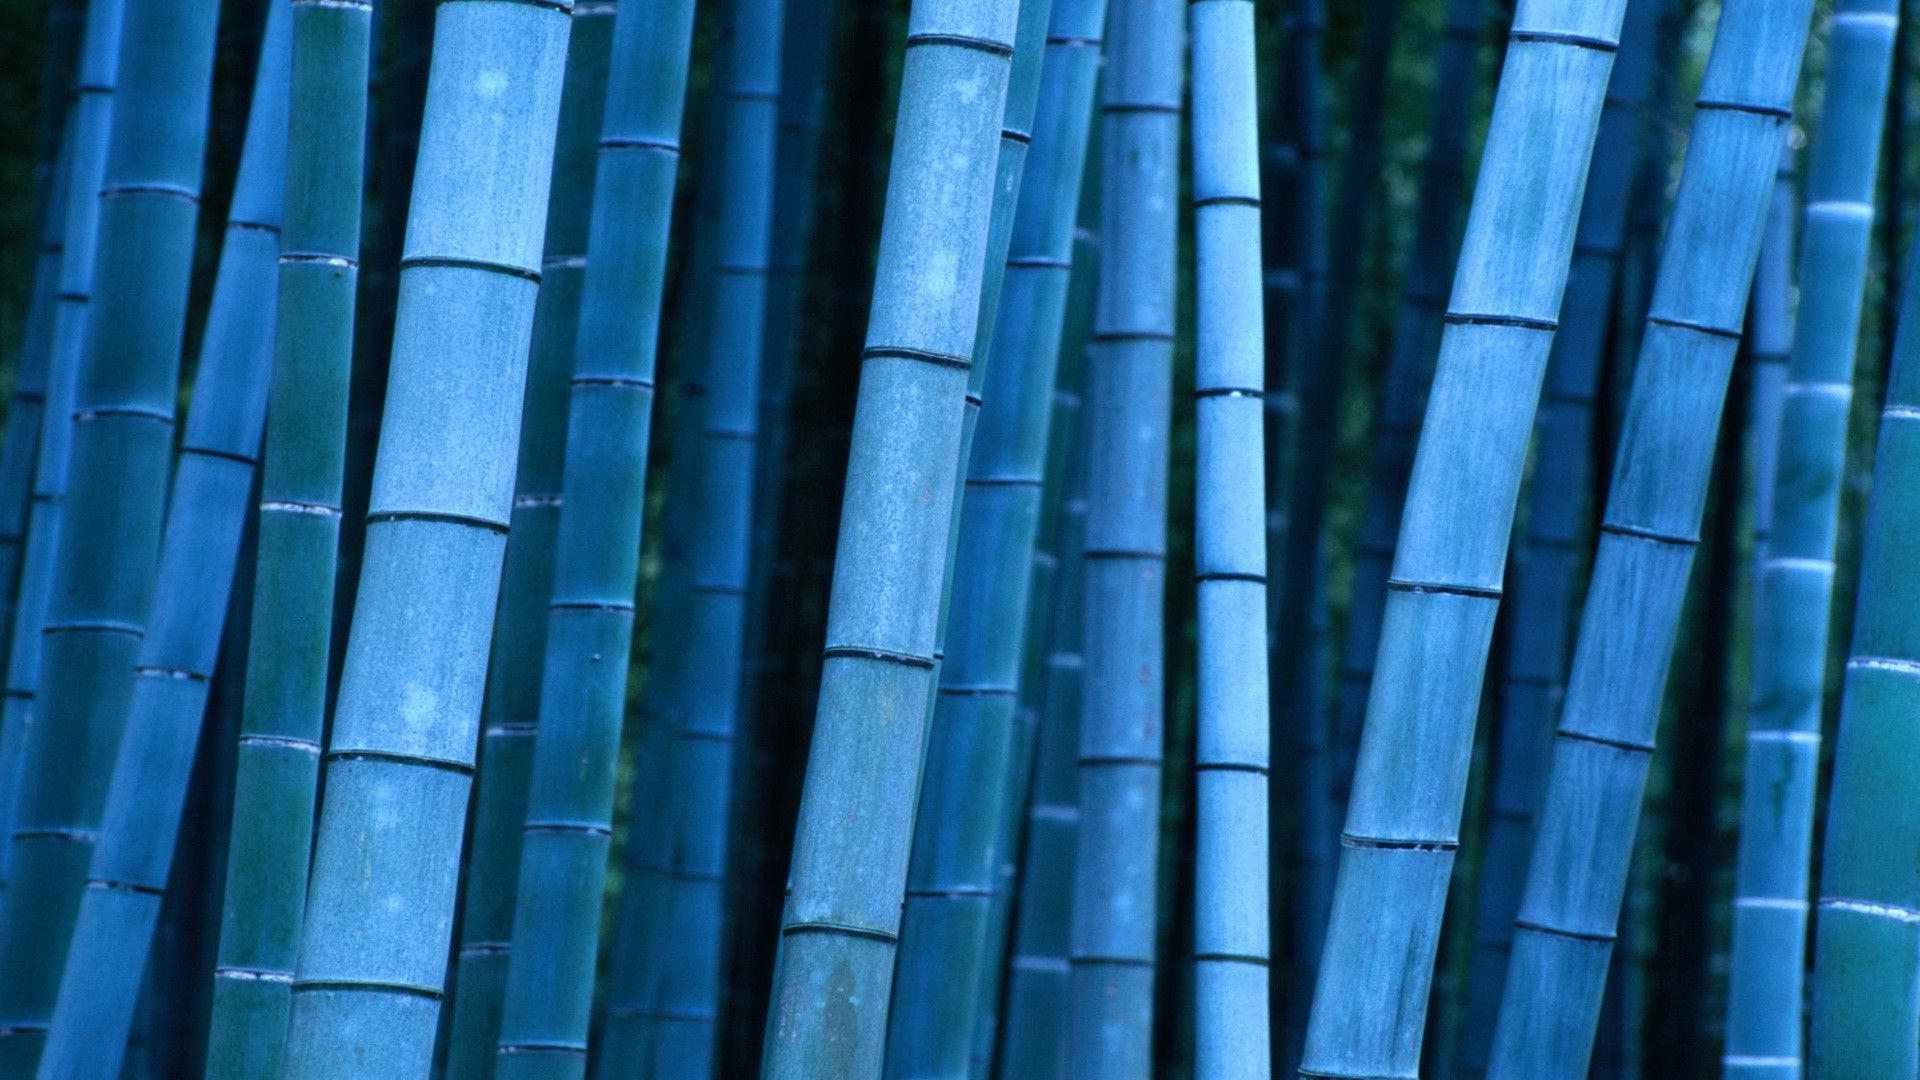 Download Blue Bamboo Sticks Wallpaper. Full HD Wallpaper